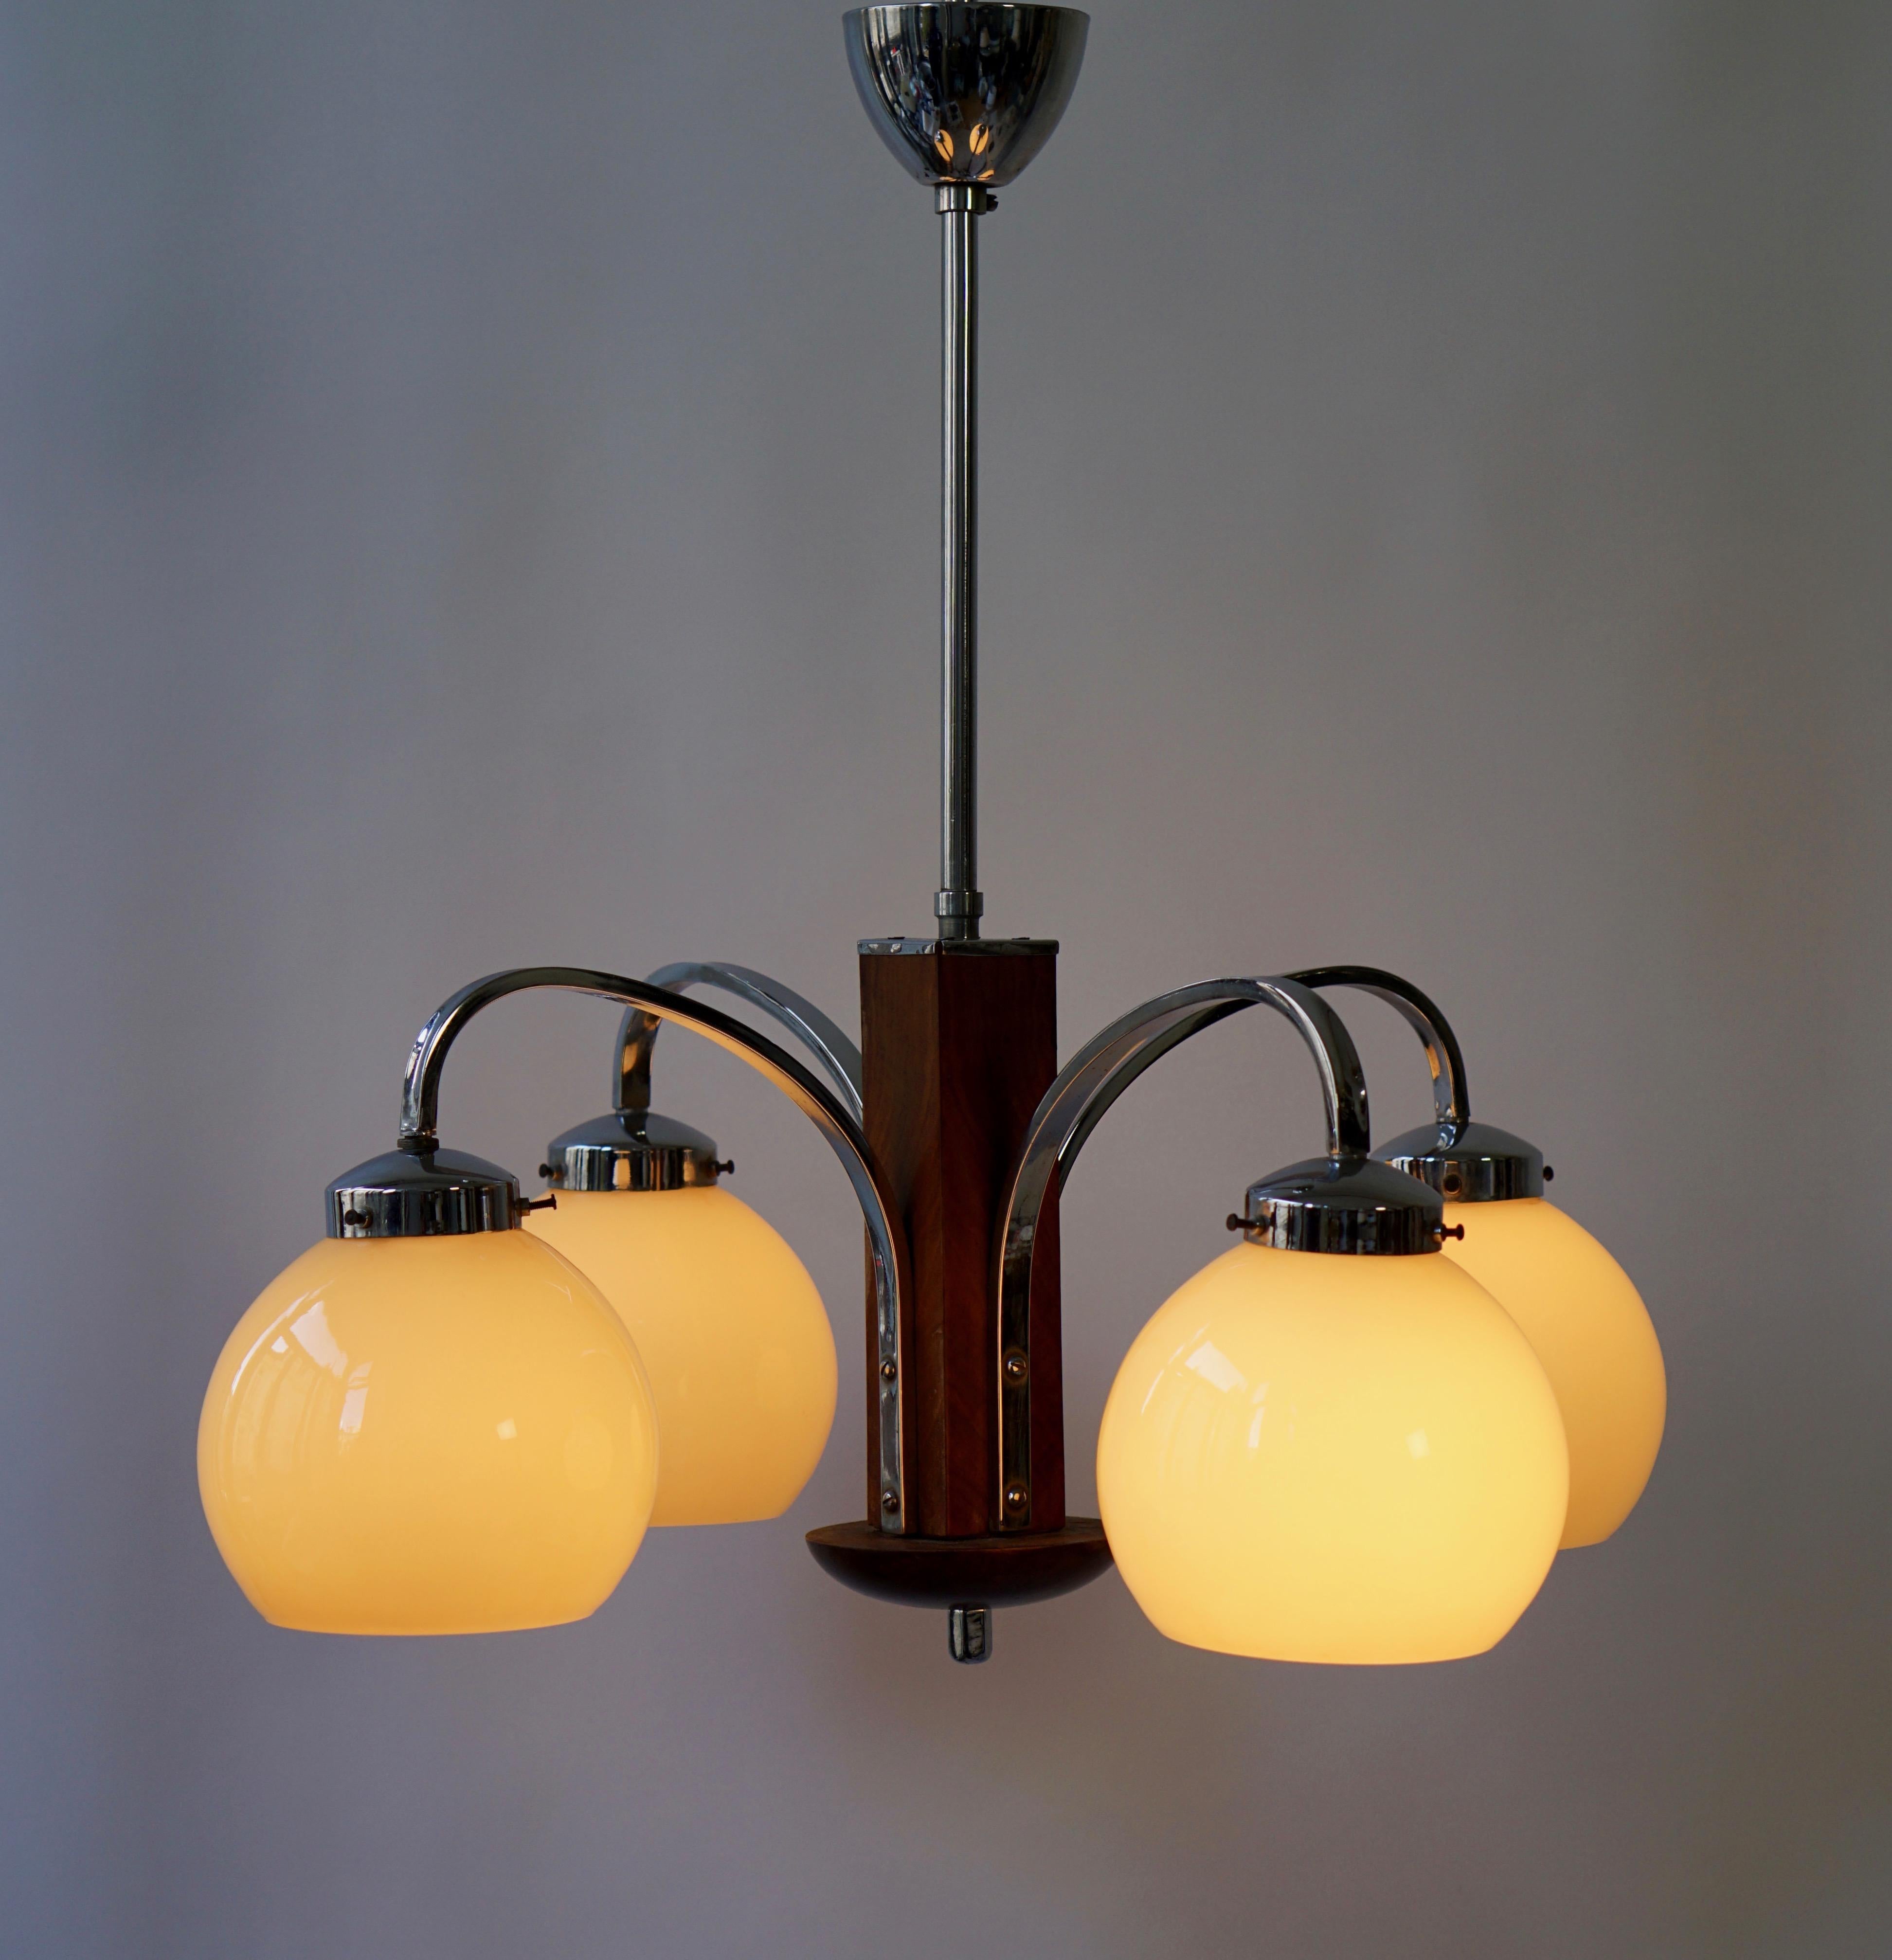 Art Deco four-arms pendant light.
Height 108 cm.
Diameter 58 cm.
Four E27 bulbs.